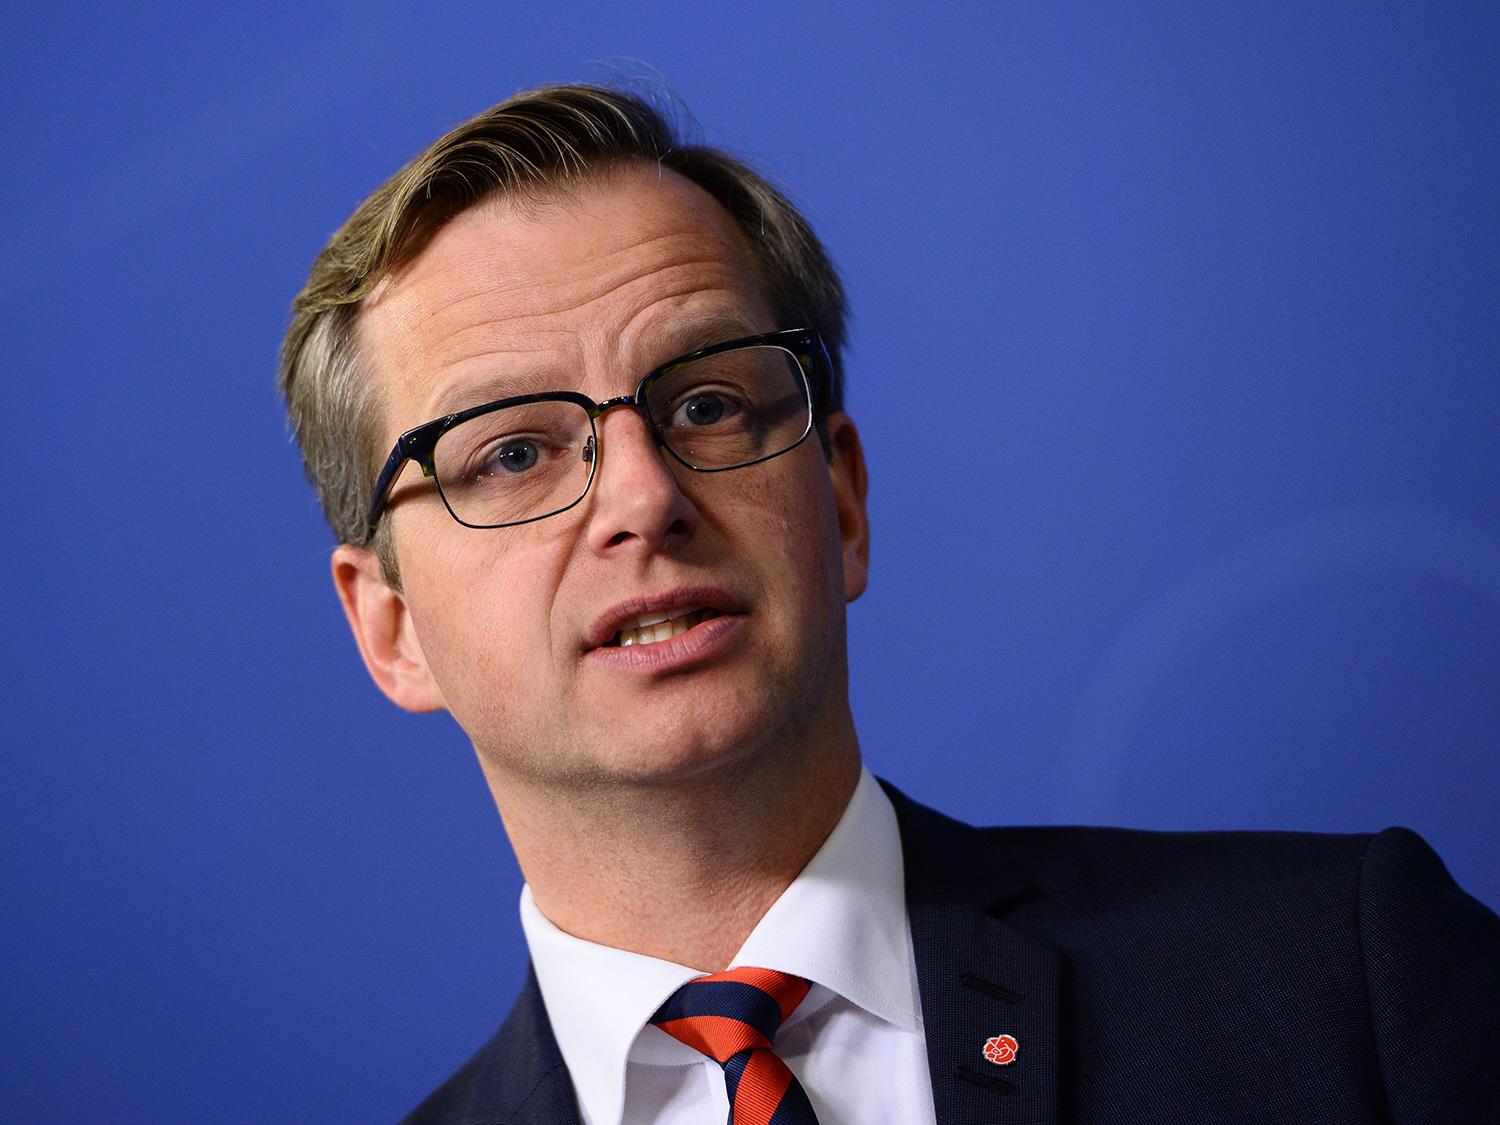 ”Det är väldigt tydligt att det krävs ansvar för Sverige nu”, säger Mikael Damberg.